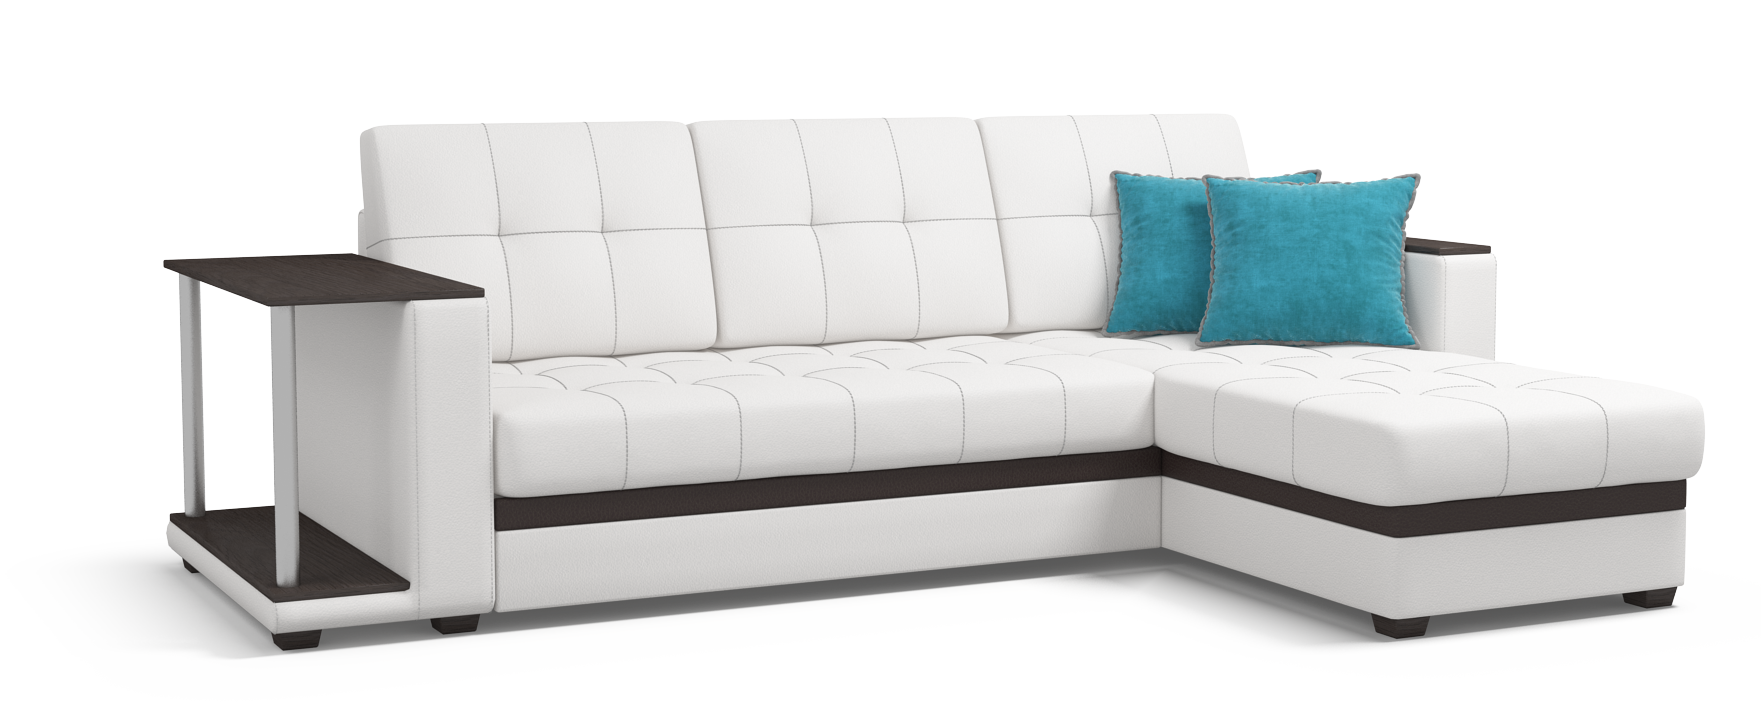 Много мебели угловой диван цены. Диван Атланта 140х200. Белый угловой диван много мебели. Угловой диван на прозрачном фоне. Угловой диван со столиком.